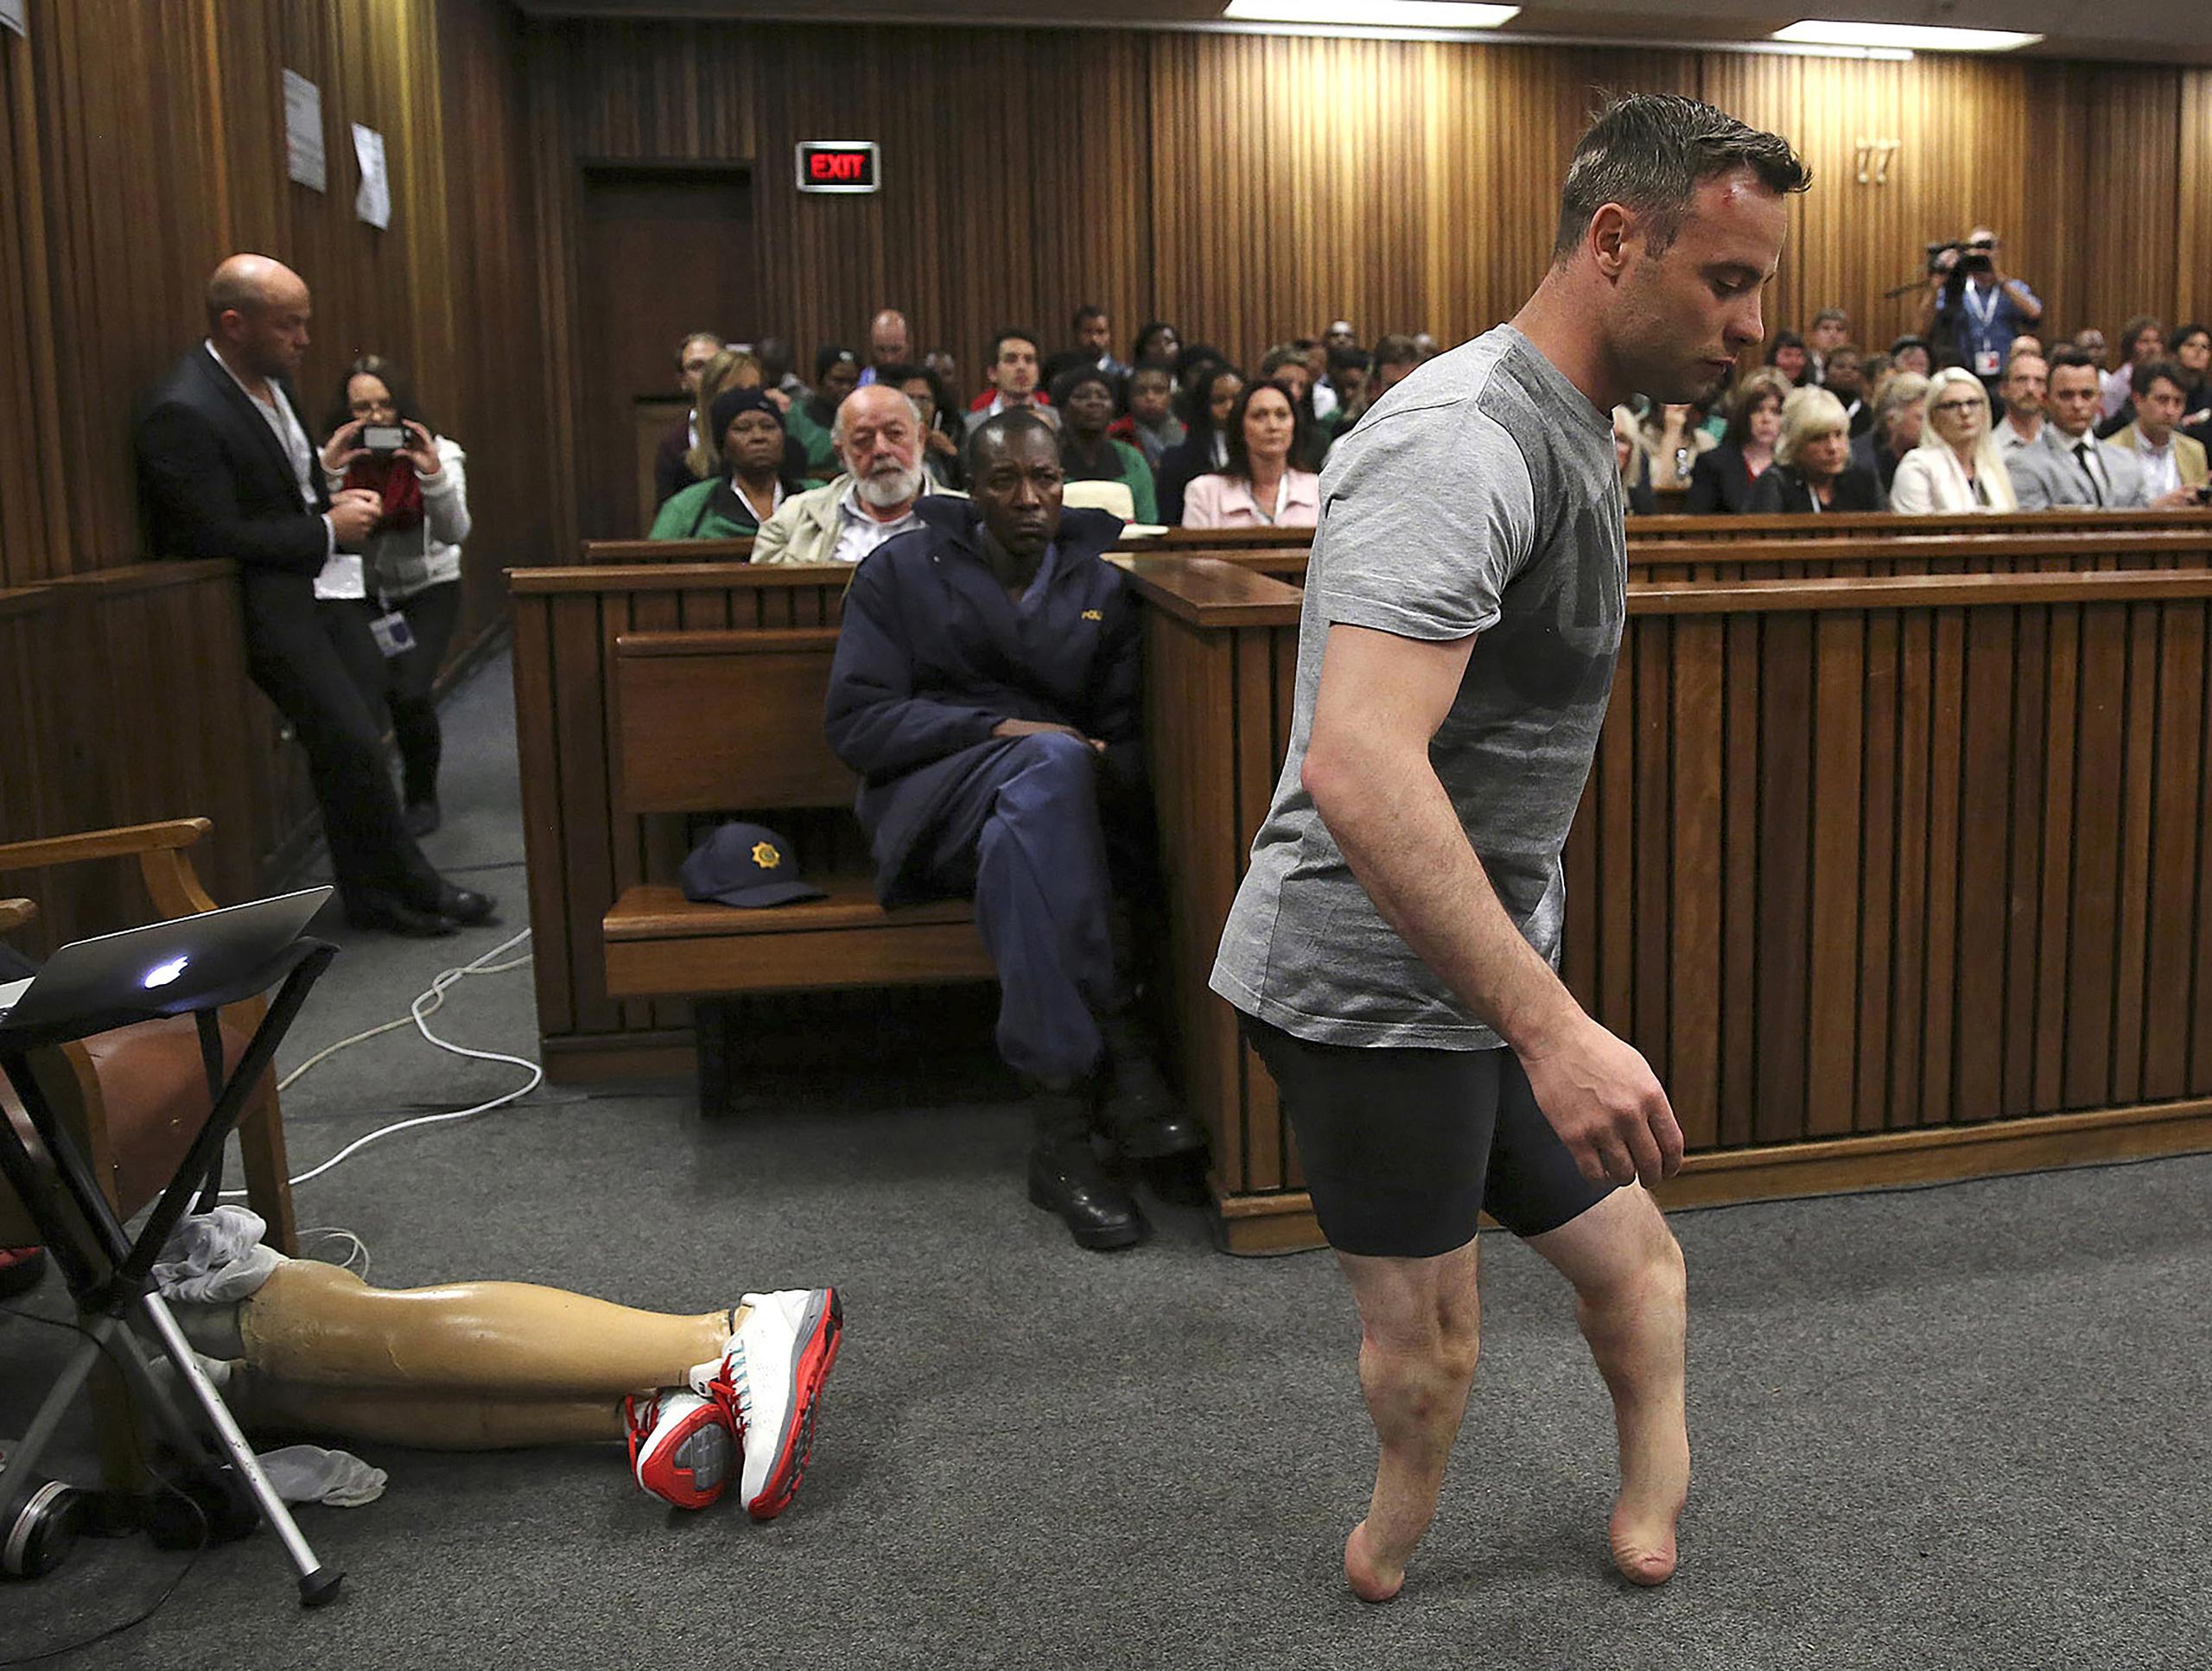 Antes del incidente, Oscar Pistorius era considerado un modelo inspirador luego de que le amputaran las dos piernas por debajo de la rodilla cuando era un bebé debido a una enfermedad congénita